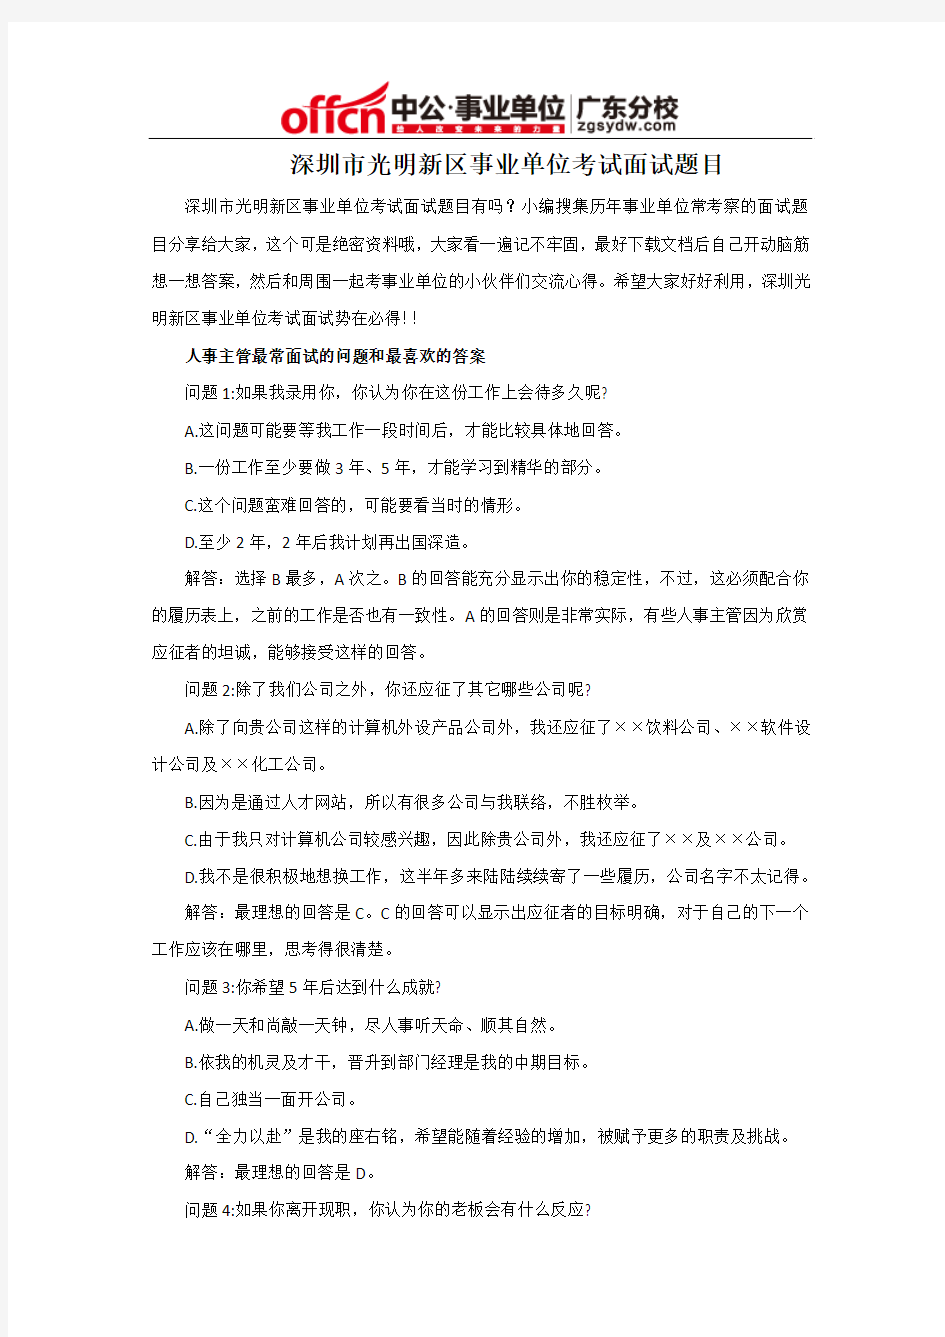 深圳市光明新区事业单位考试面试题目